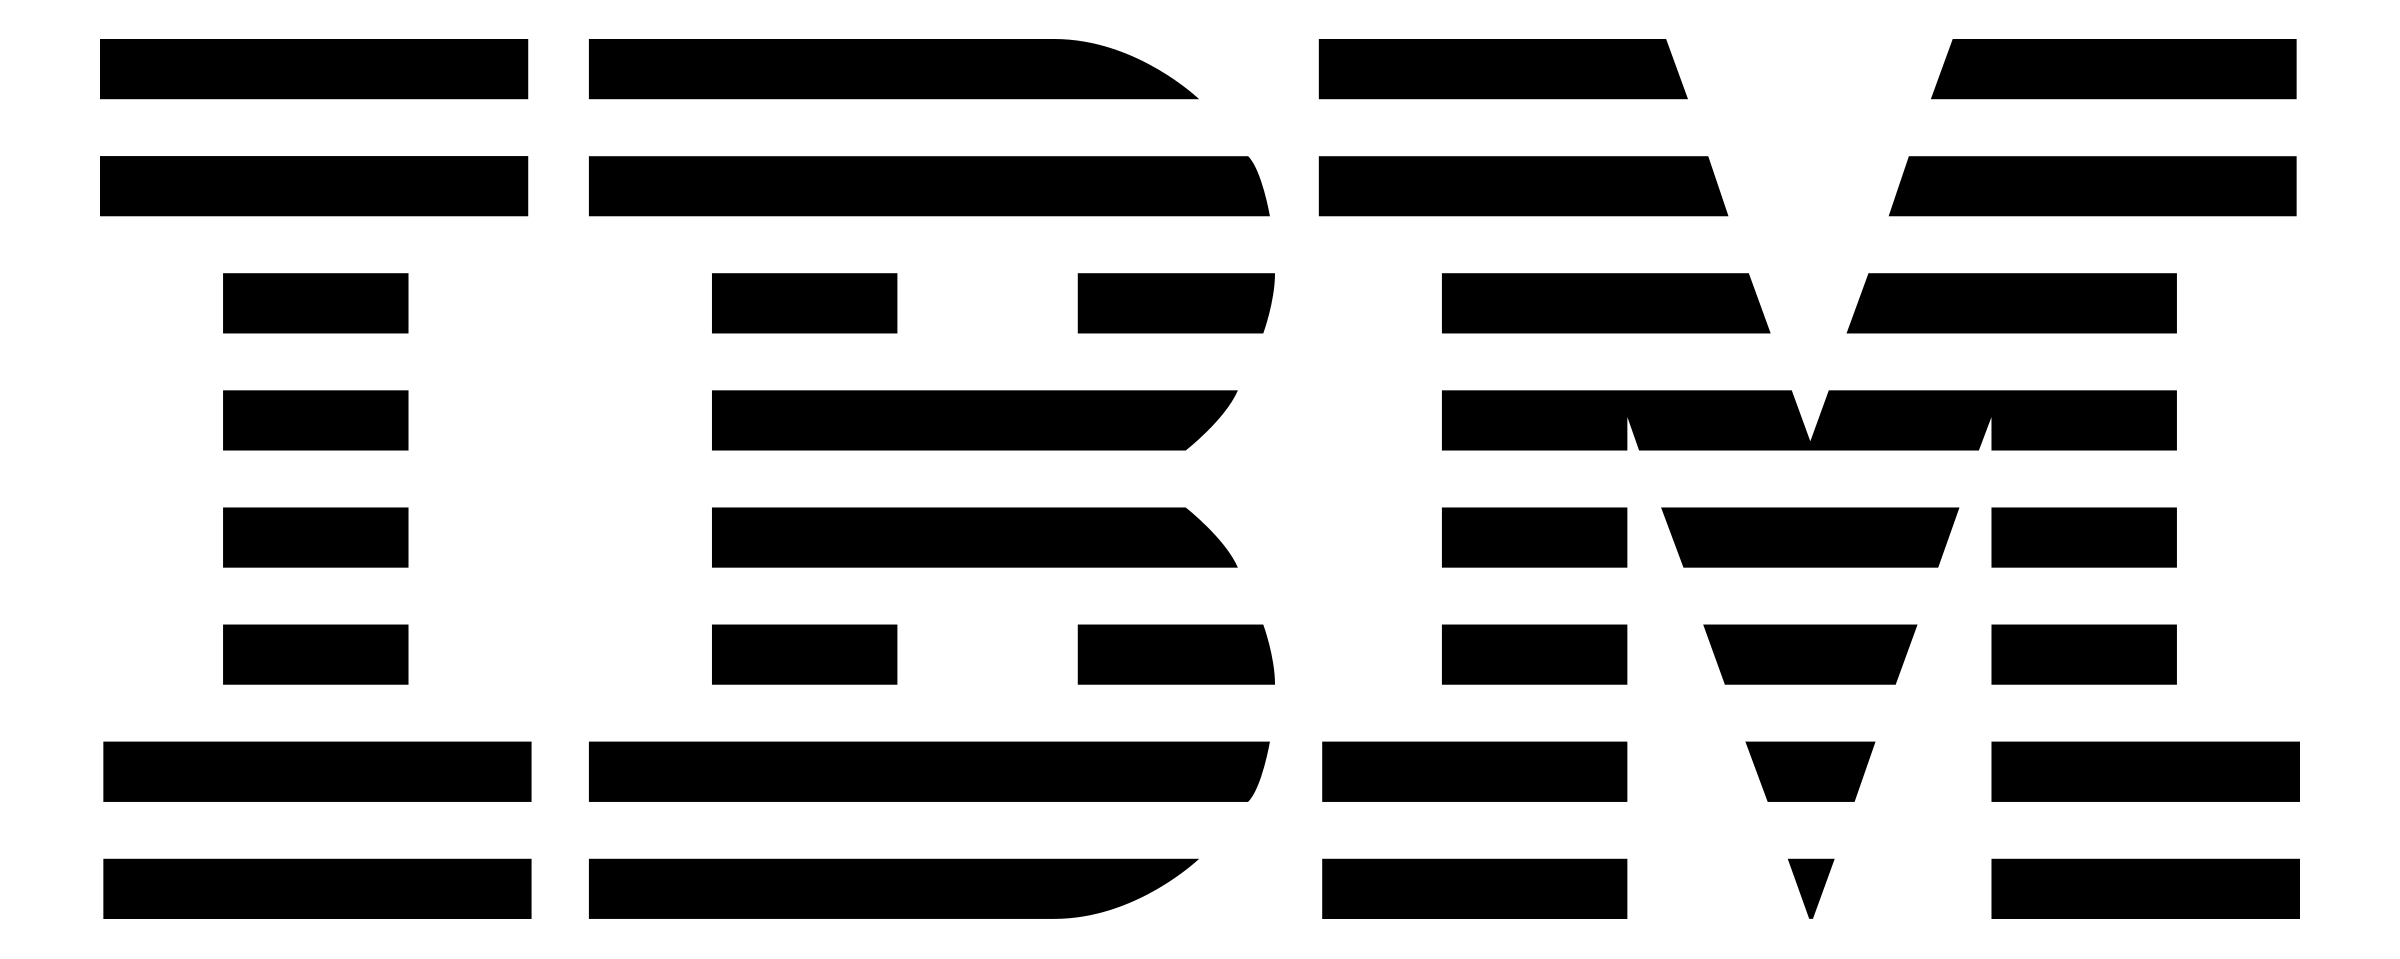 IBM Vector Logo - IBM Logo PNG Transparent & SVG Vector